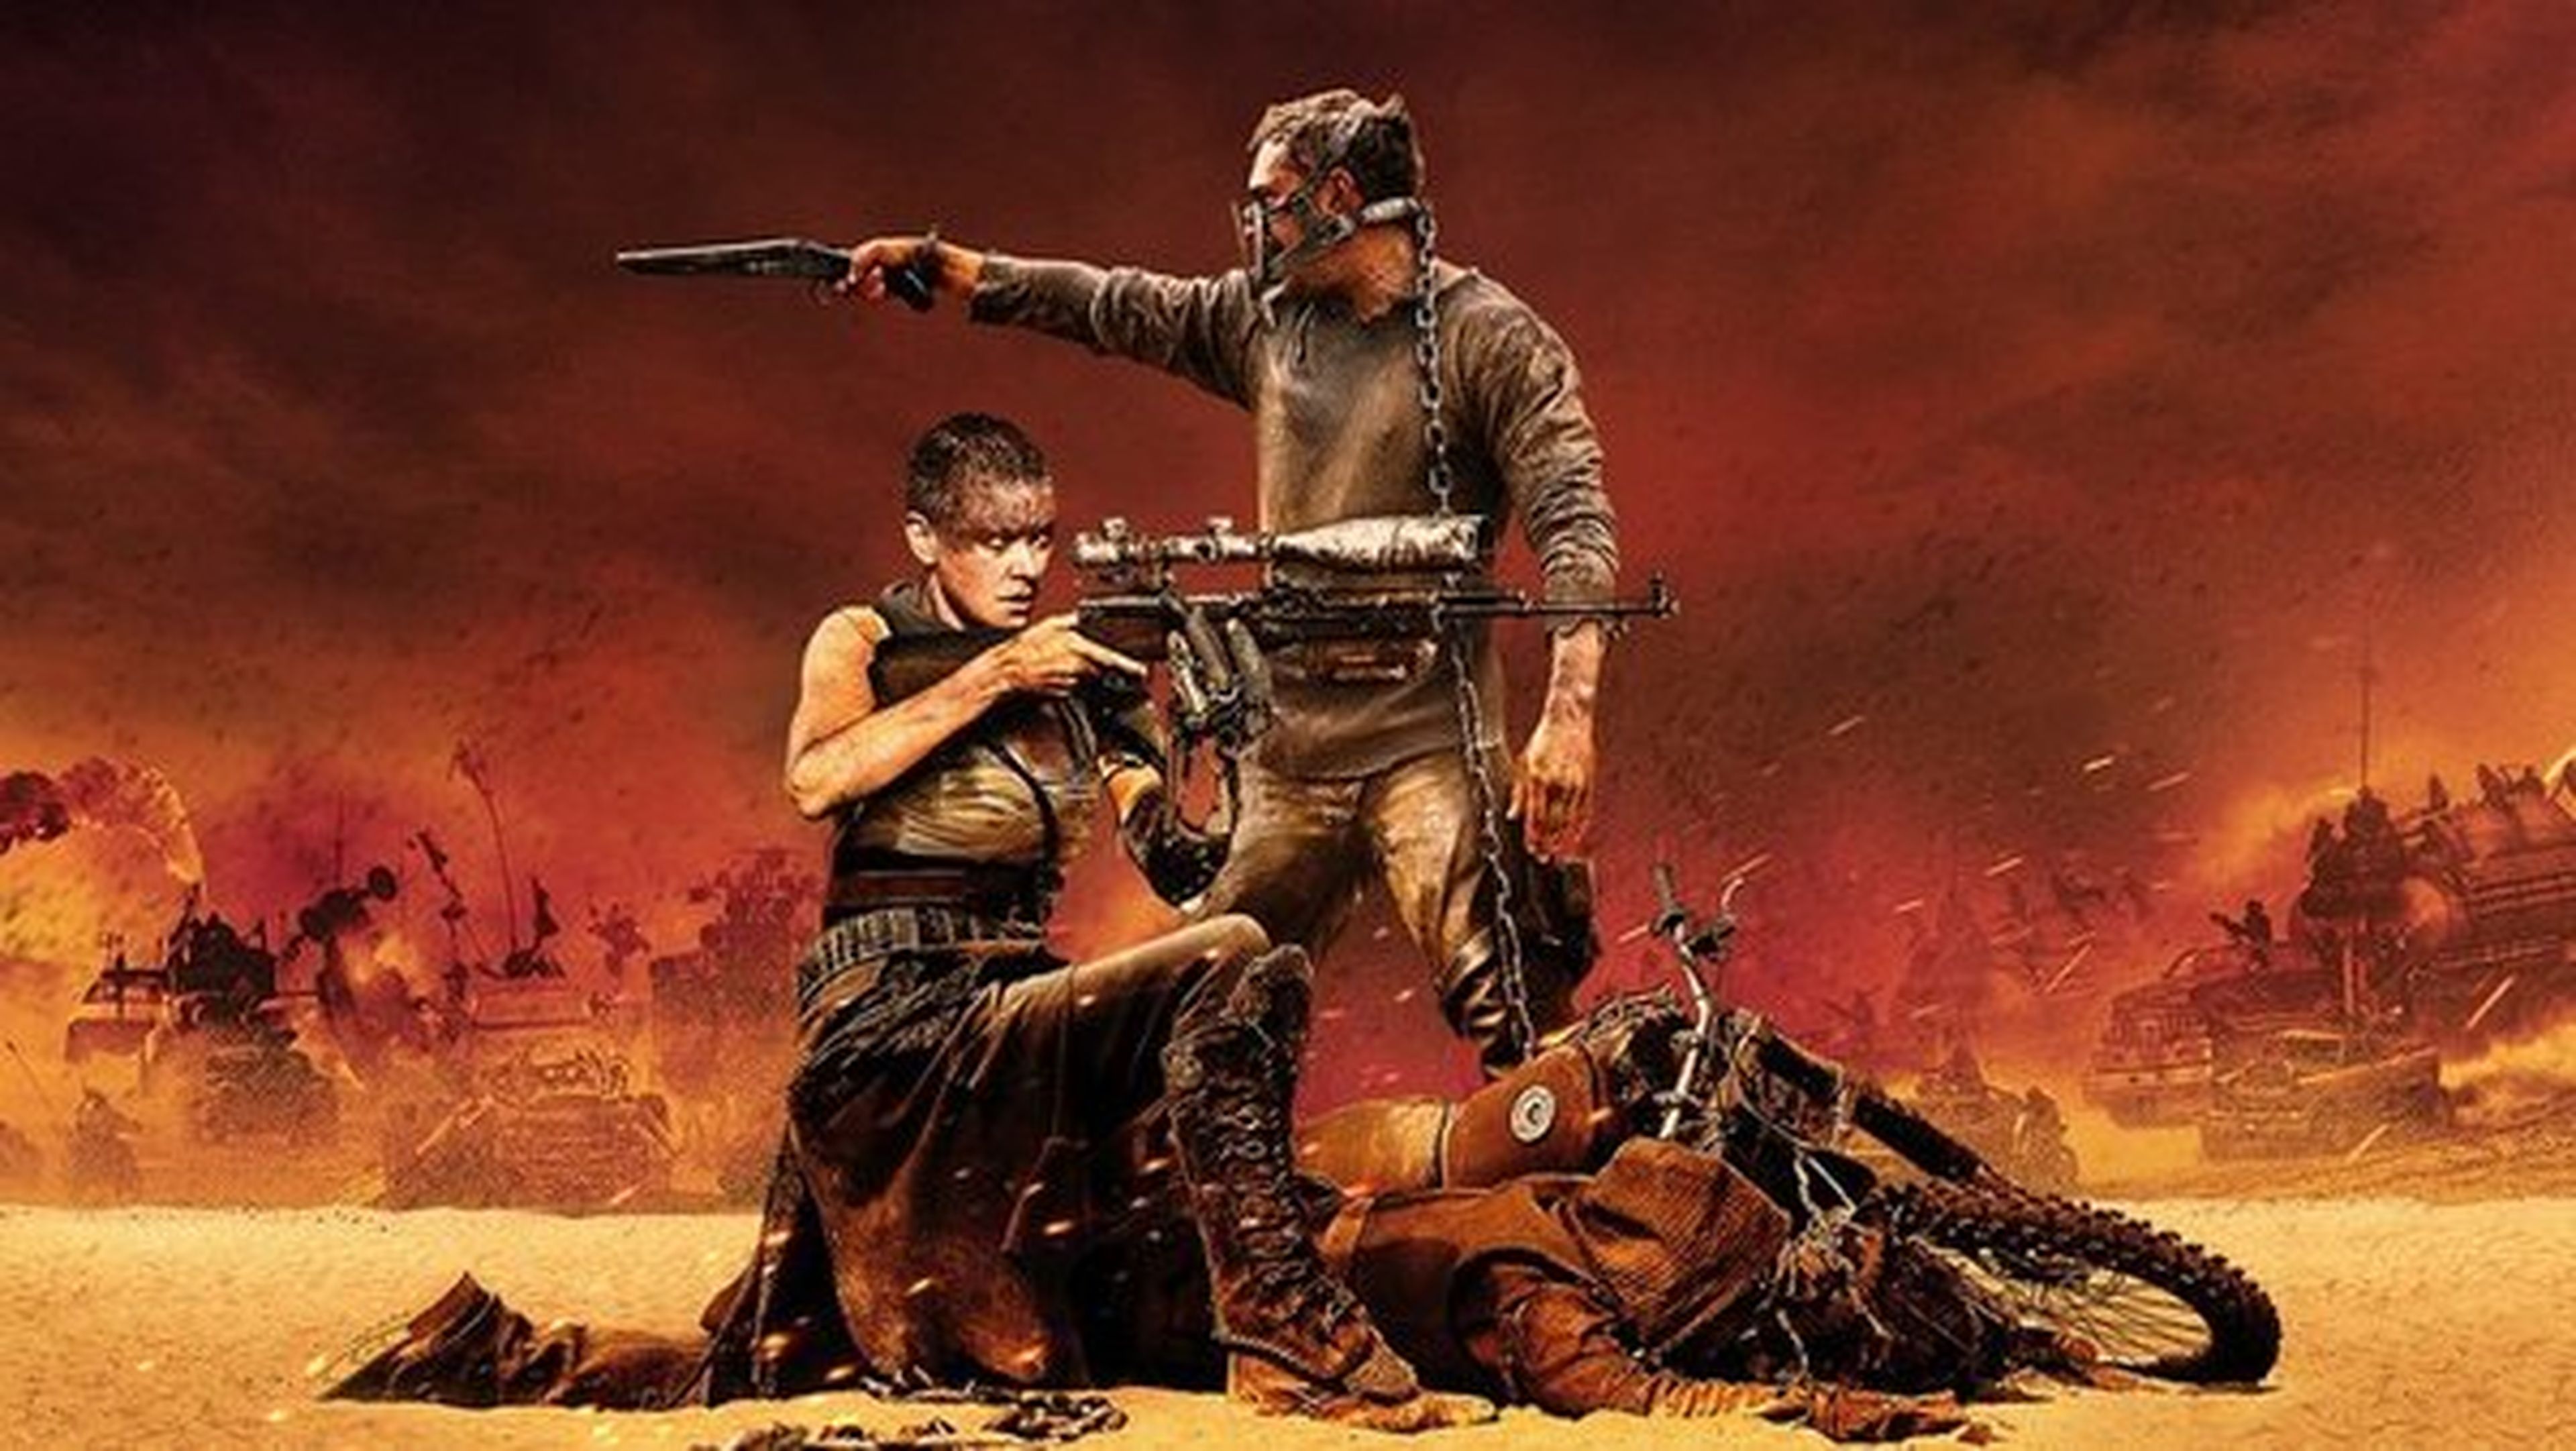 Mad Max: furia en la carretera tendrá dos secuelas pero Miller rodará antes una cinta sin FX